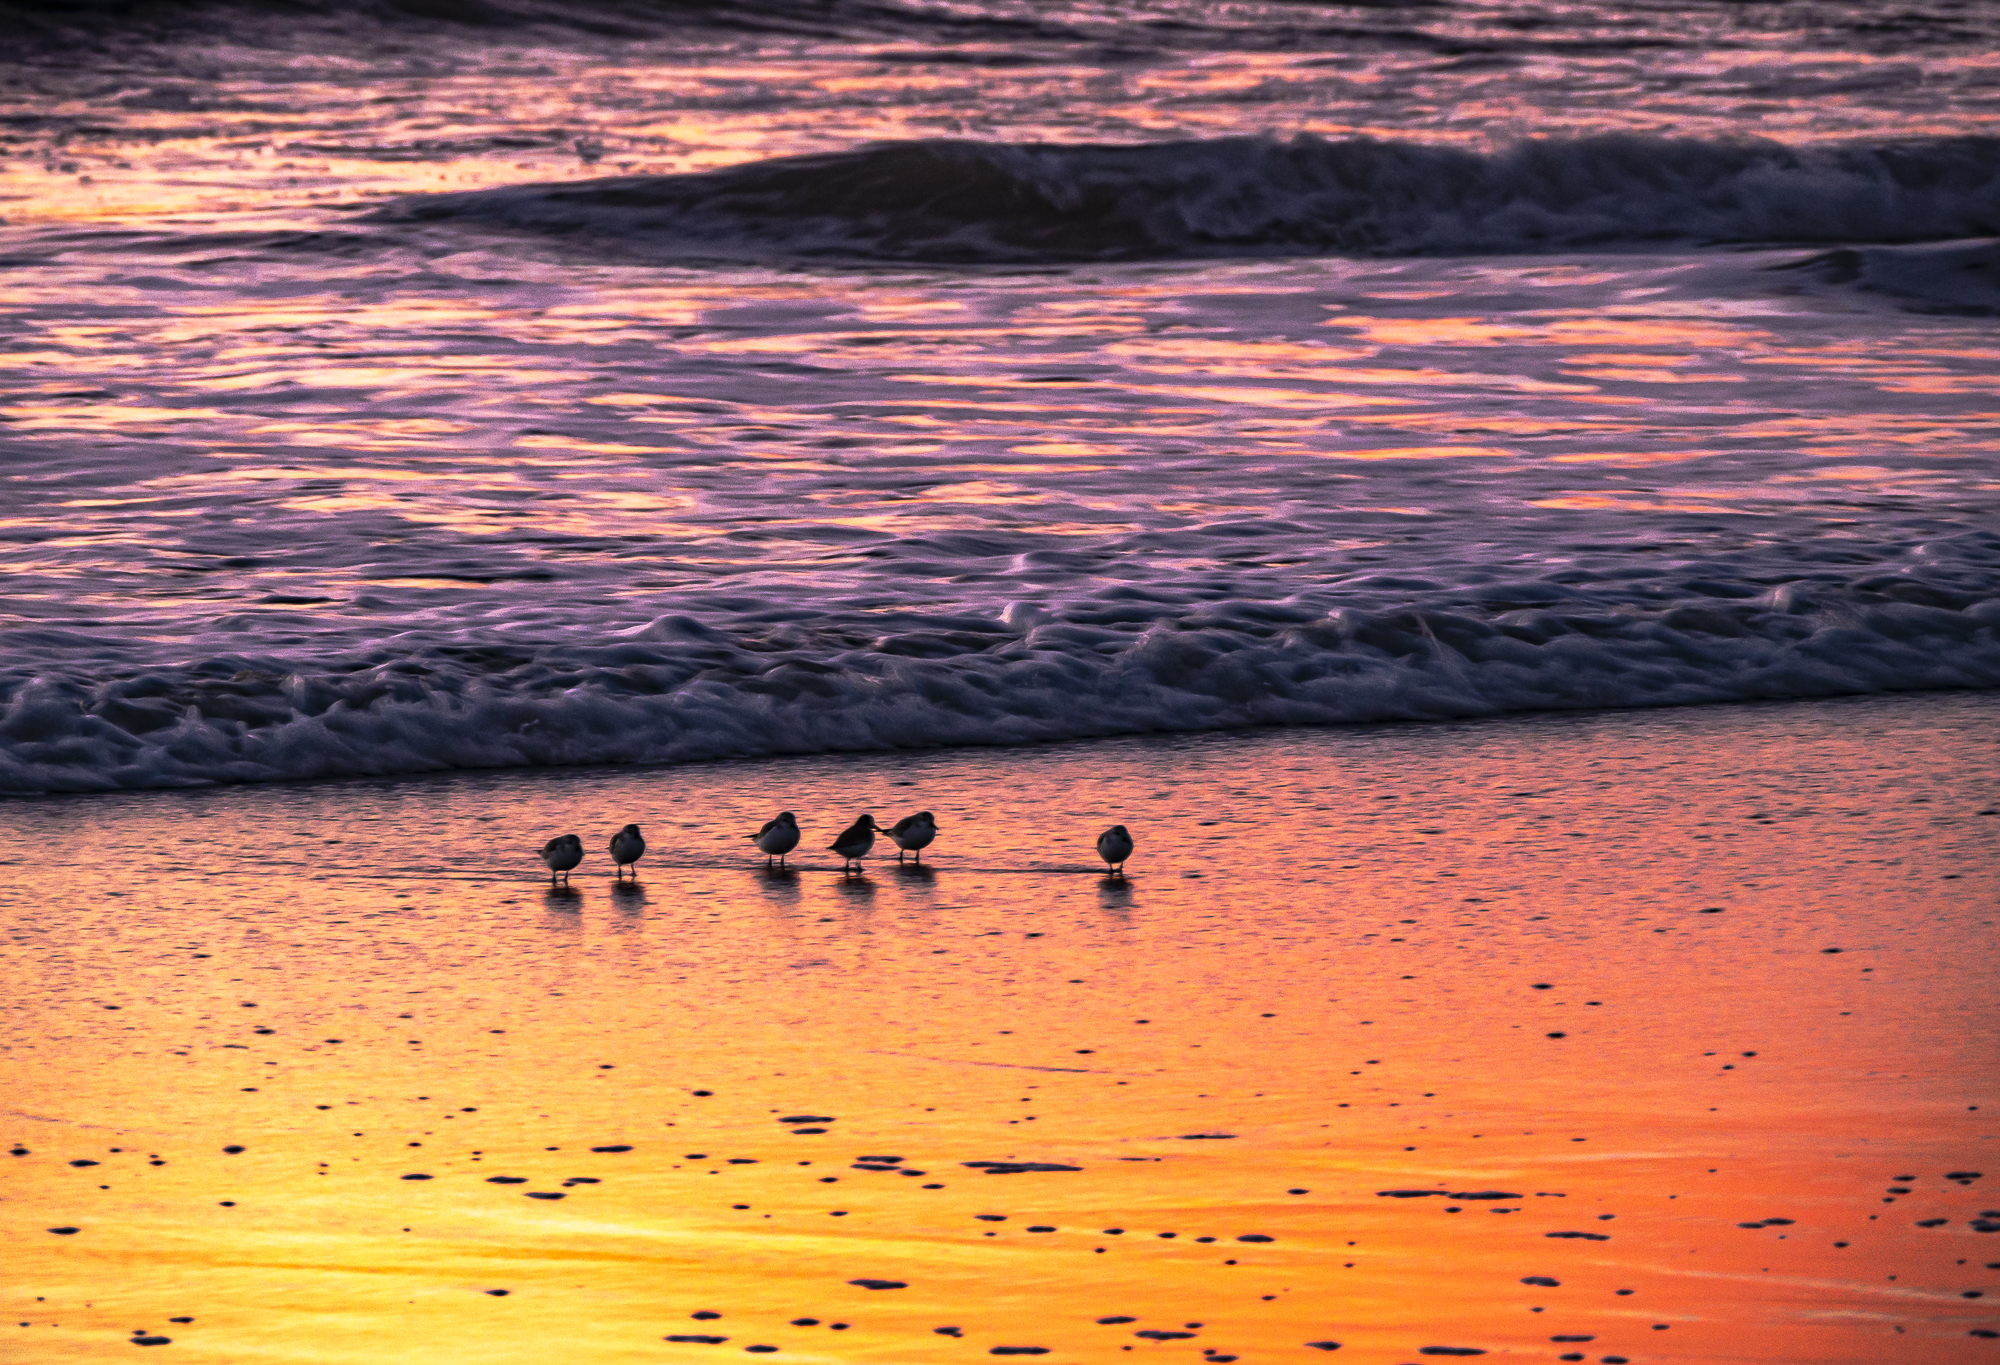 “Shorebirds at Day’s End”, 2011, Solana Beach, CA